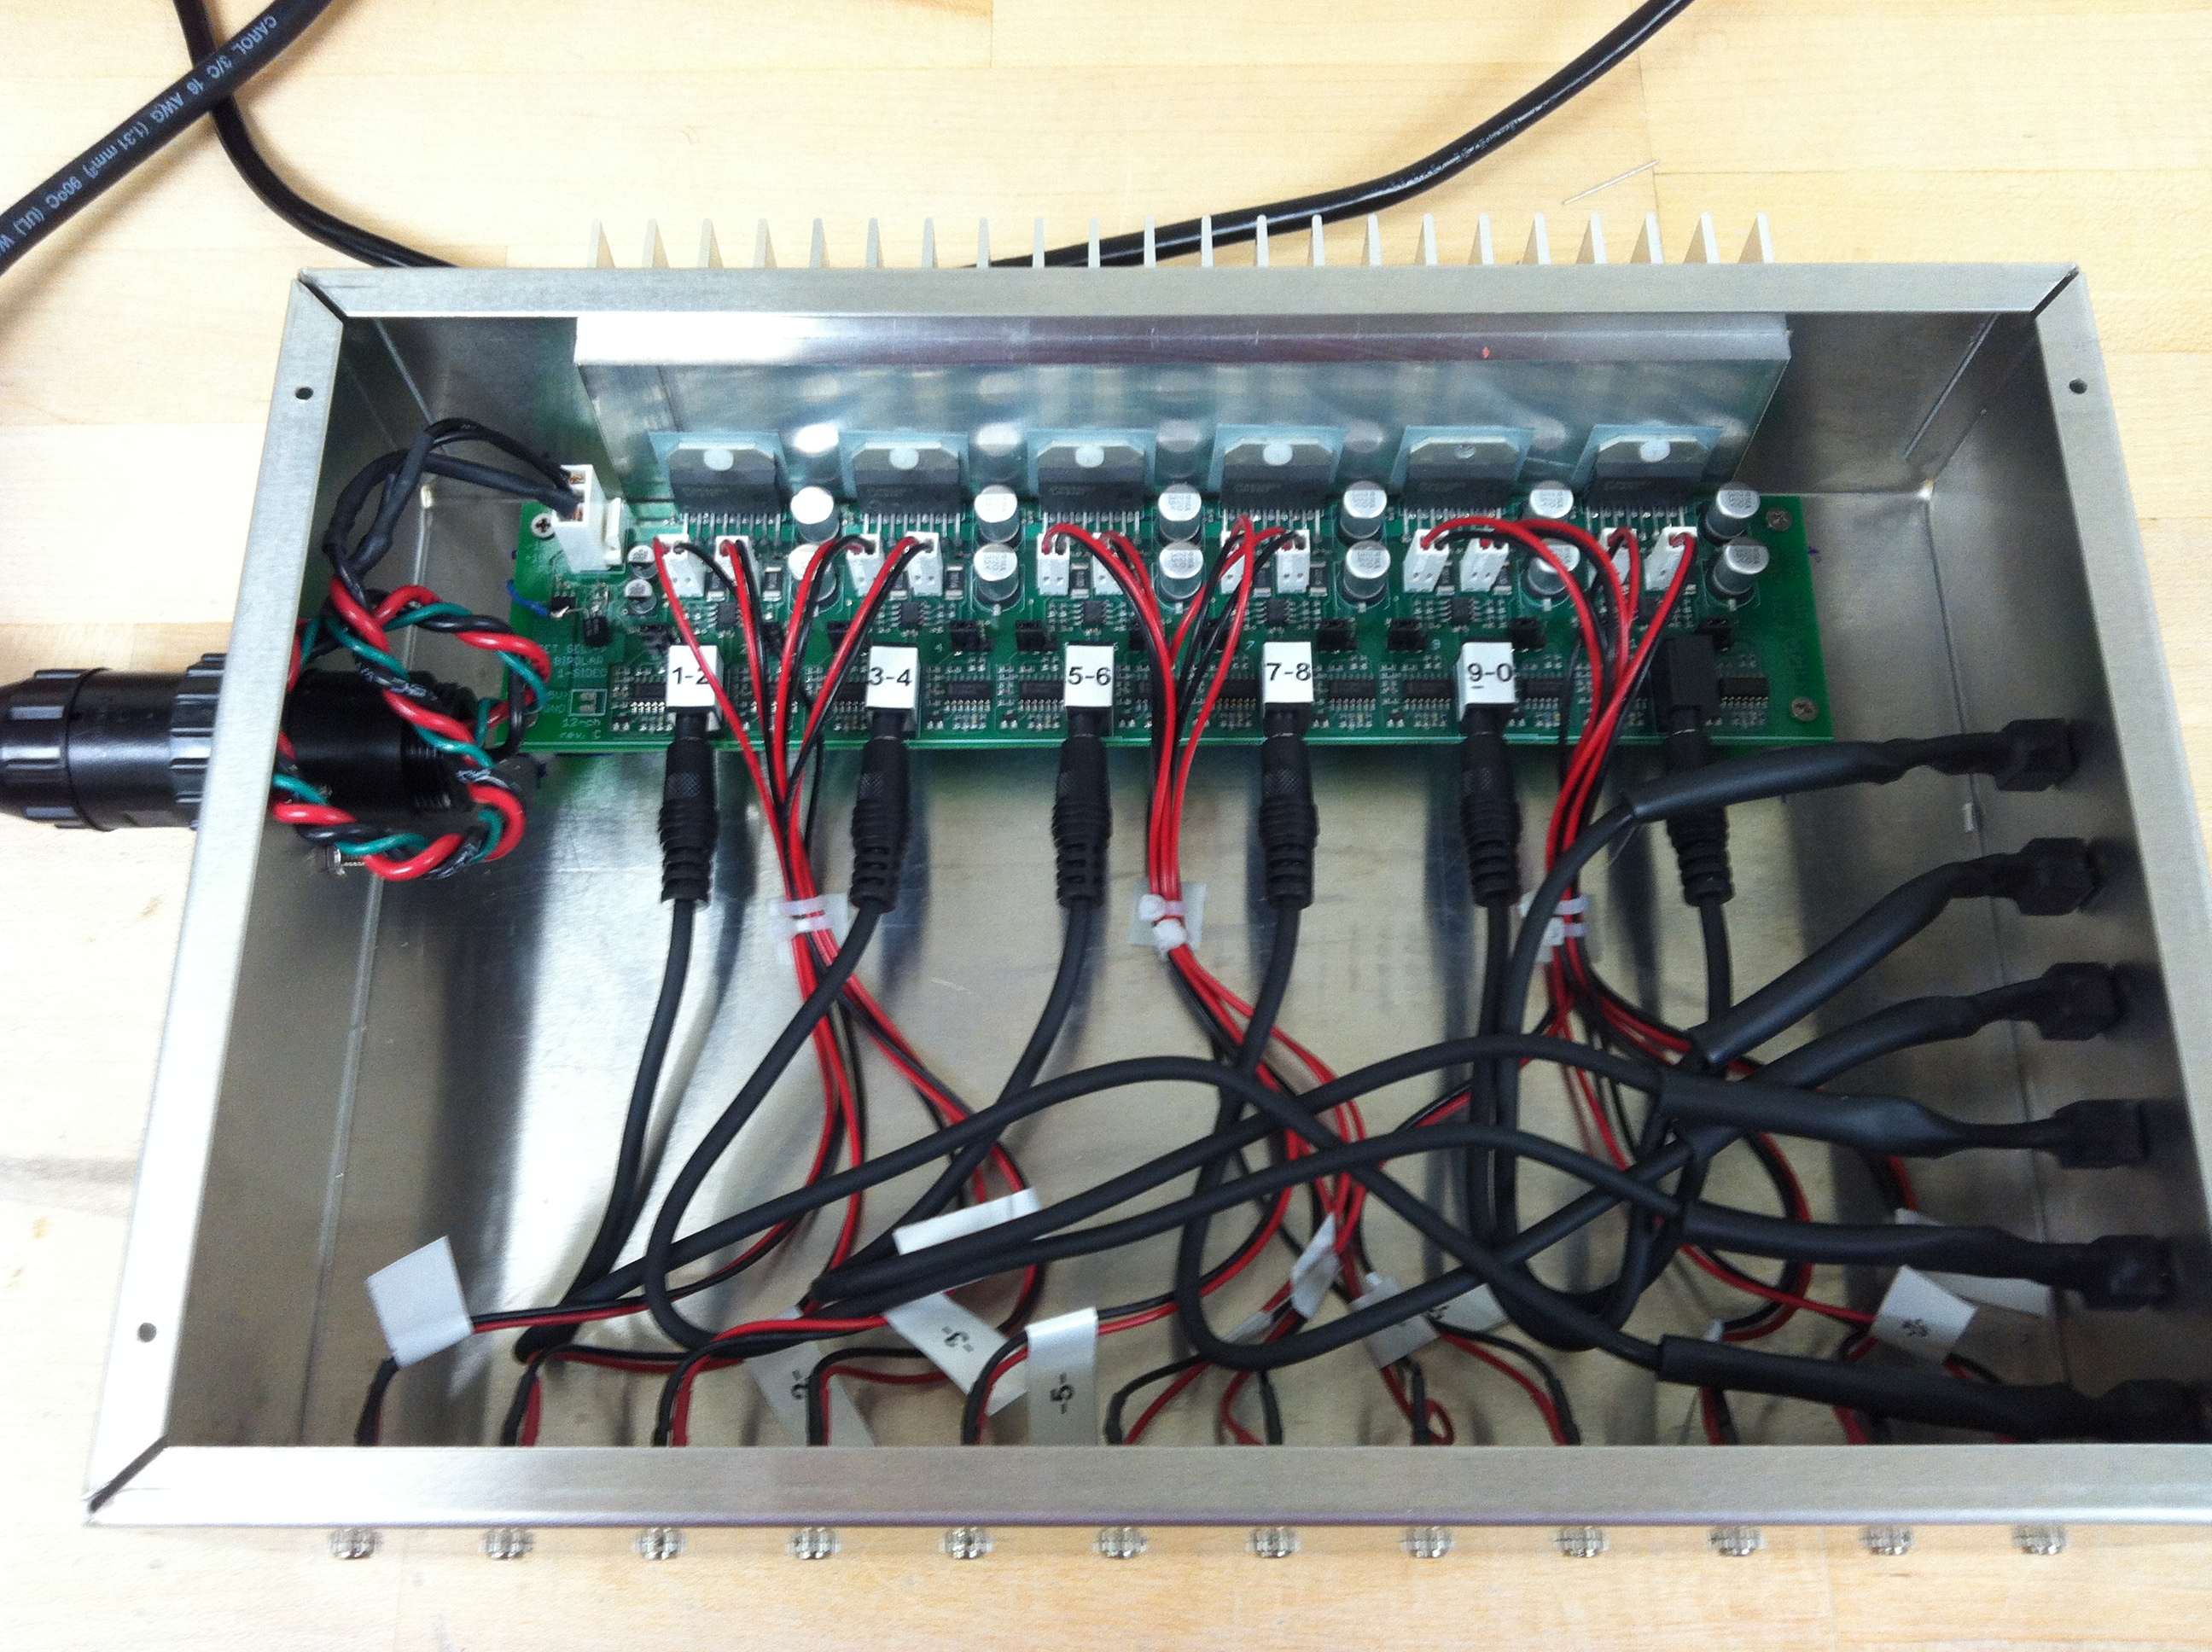 amplifier board mounted